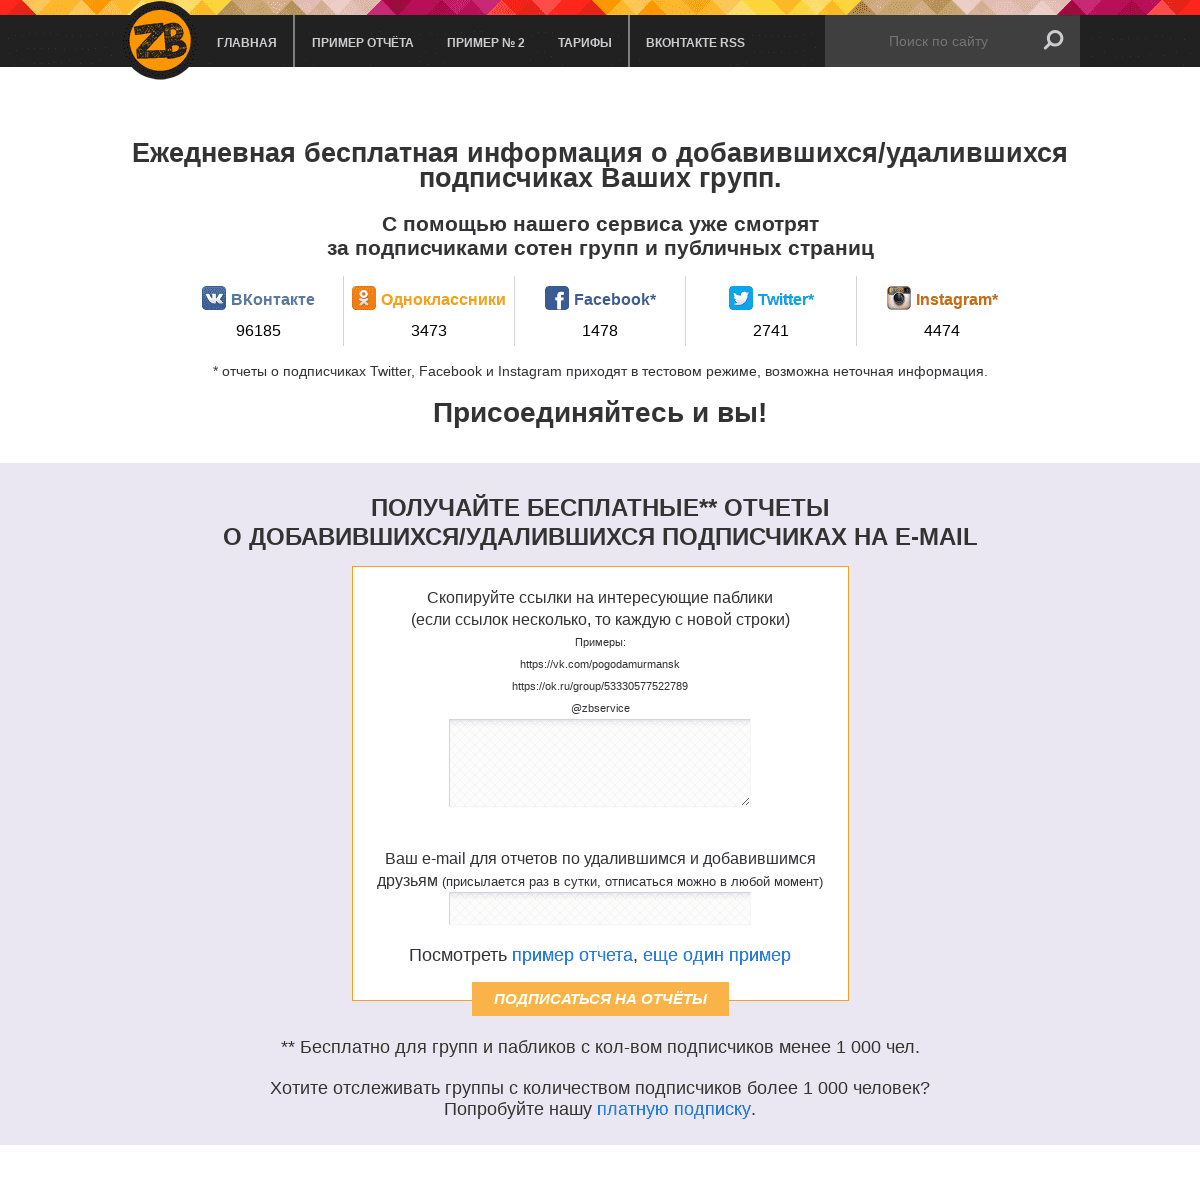 Сервис бесплатных отчетов о тех, кто добавился и удалился в группах ВКонтакте, Одноклассниках, МоёмМире, Фотостране, Facebook, T